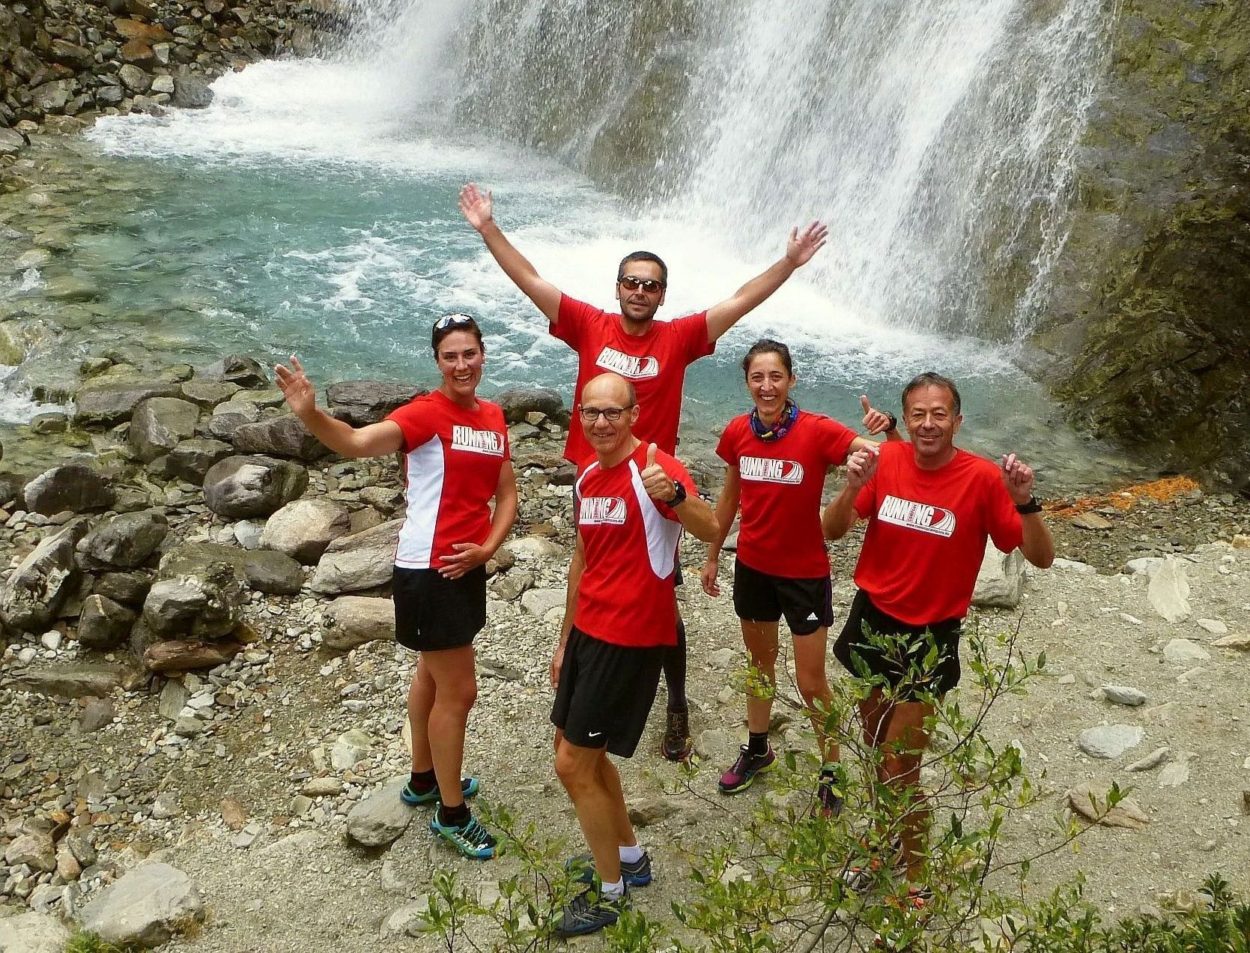 Ausflug zum Wasserfall im Laufwochenende Höhentraining & Wellness in Livigno